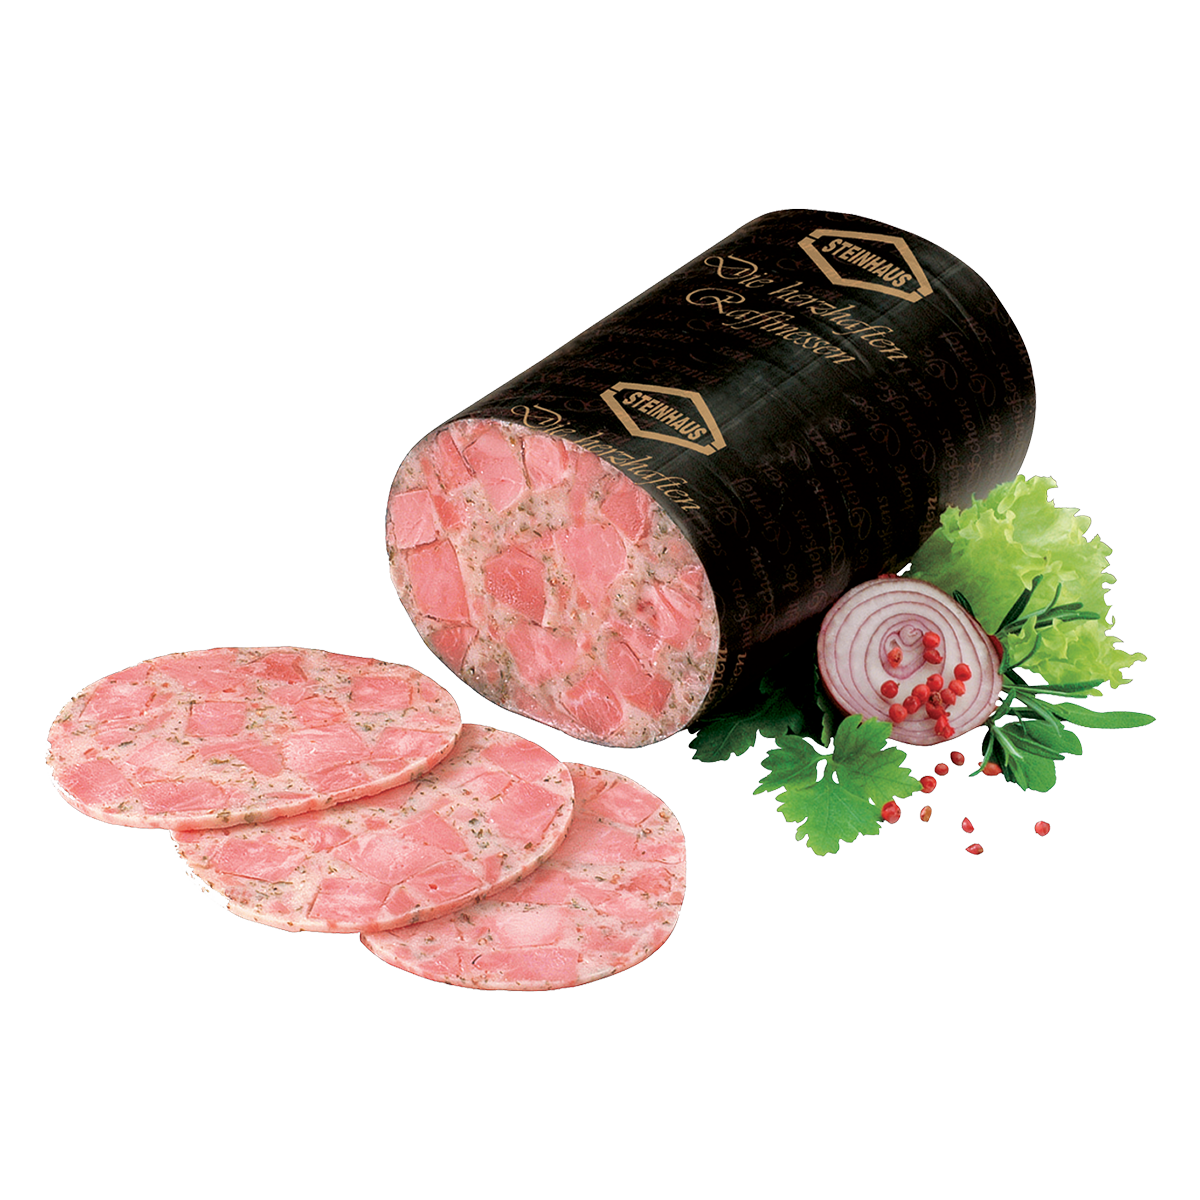 Guts-Kräutersülze BD – Magere Sülzwurst-Spezialität aus bestem Schweinefleisch mit frischen Kräutern und einer Kümmelnote – frisch aufgeschnitten an der Bedienungstheke.